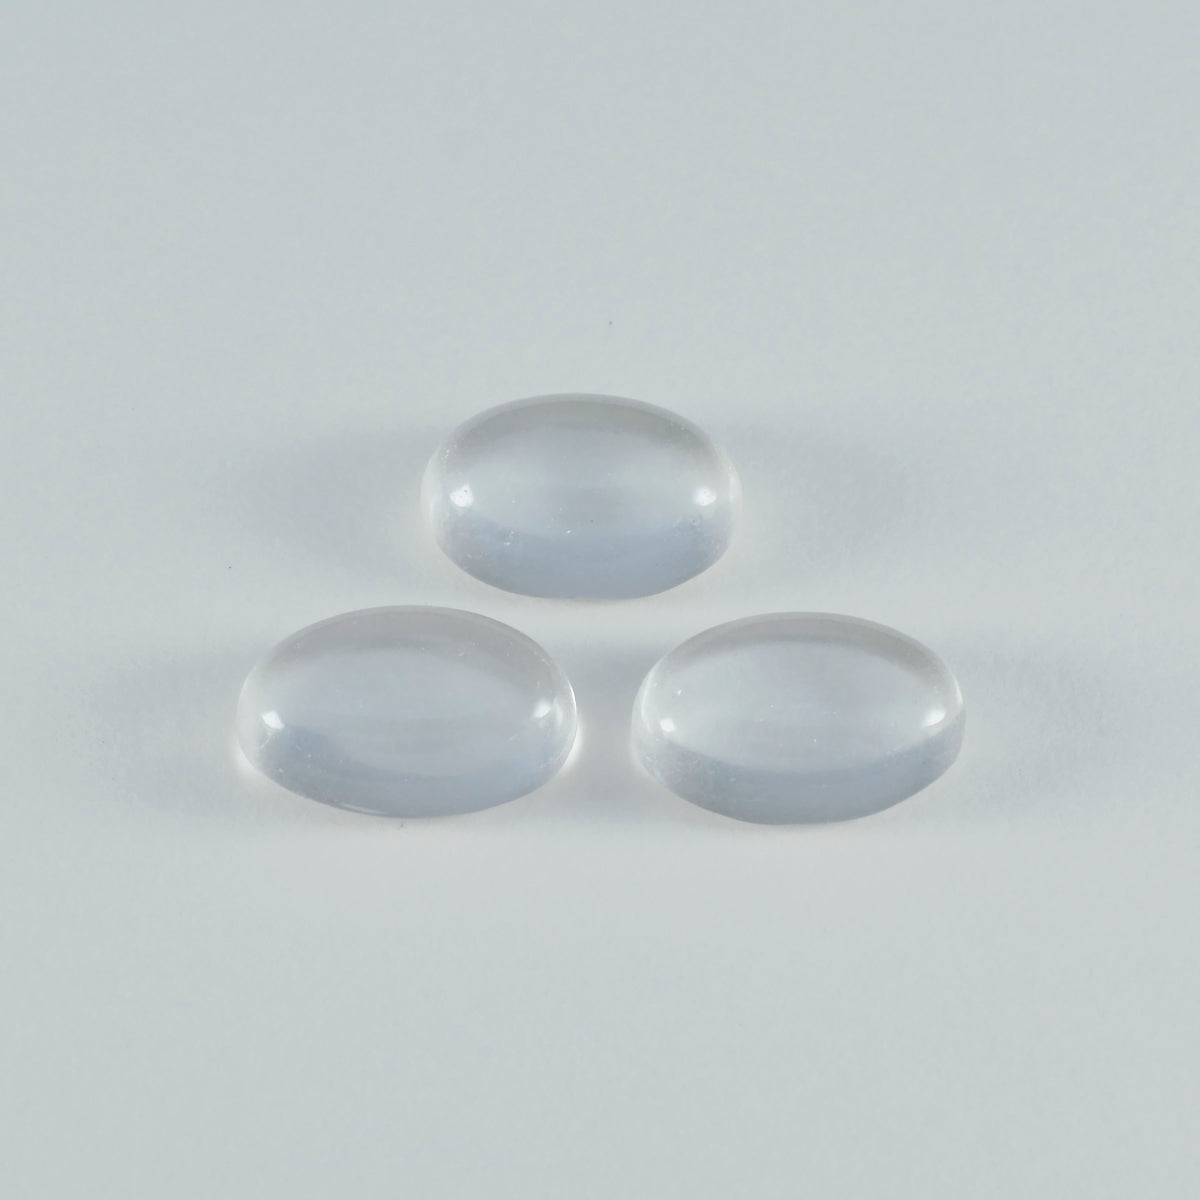 riyogems 1 шт. кабошон из белого кристалла кварца 10x14 мм овальной формы, драгоценный камень потрясающего качества